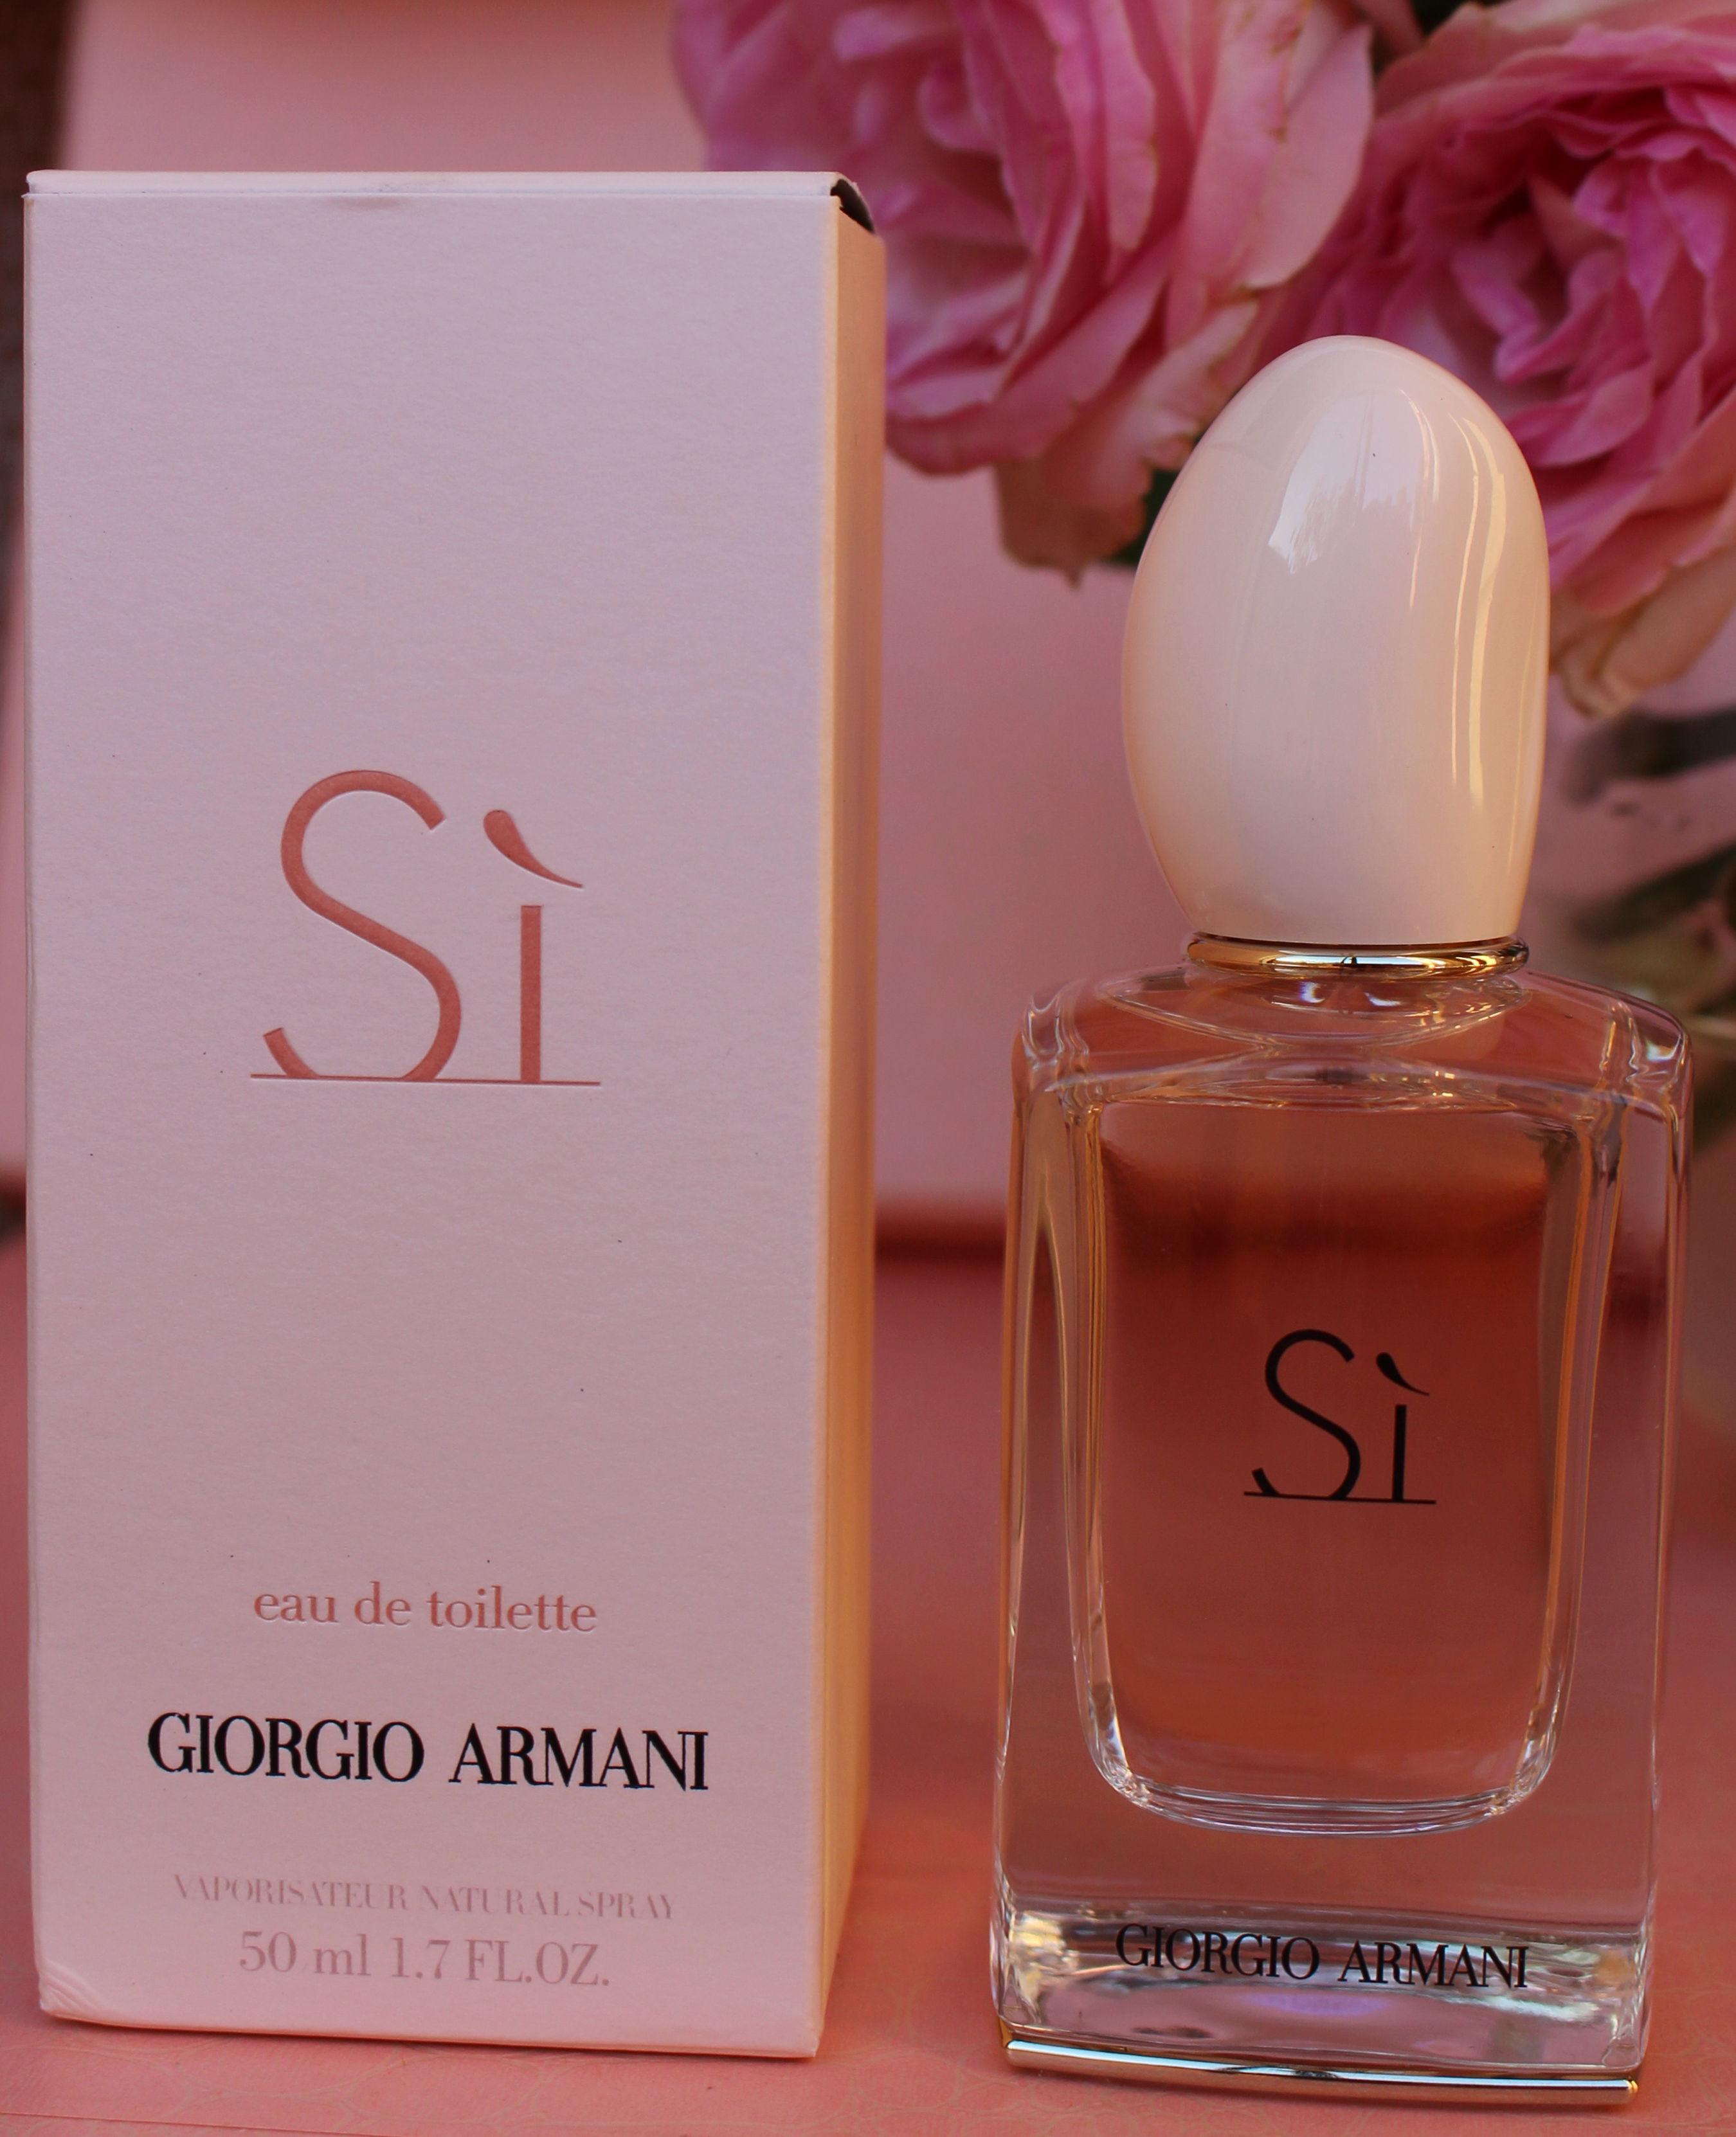 giorgio armani si eau de parfum review